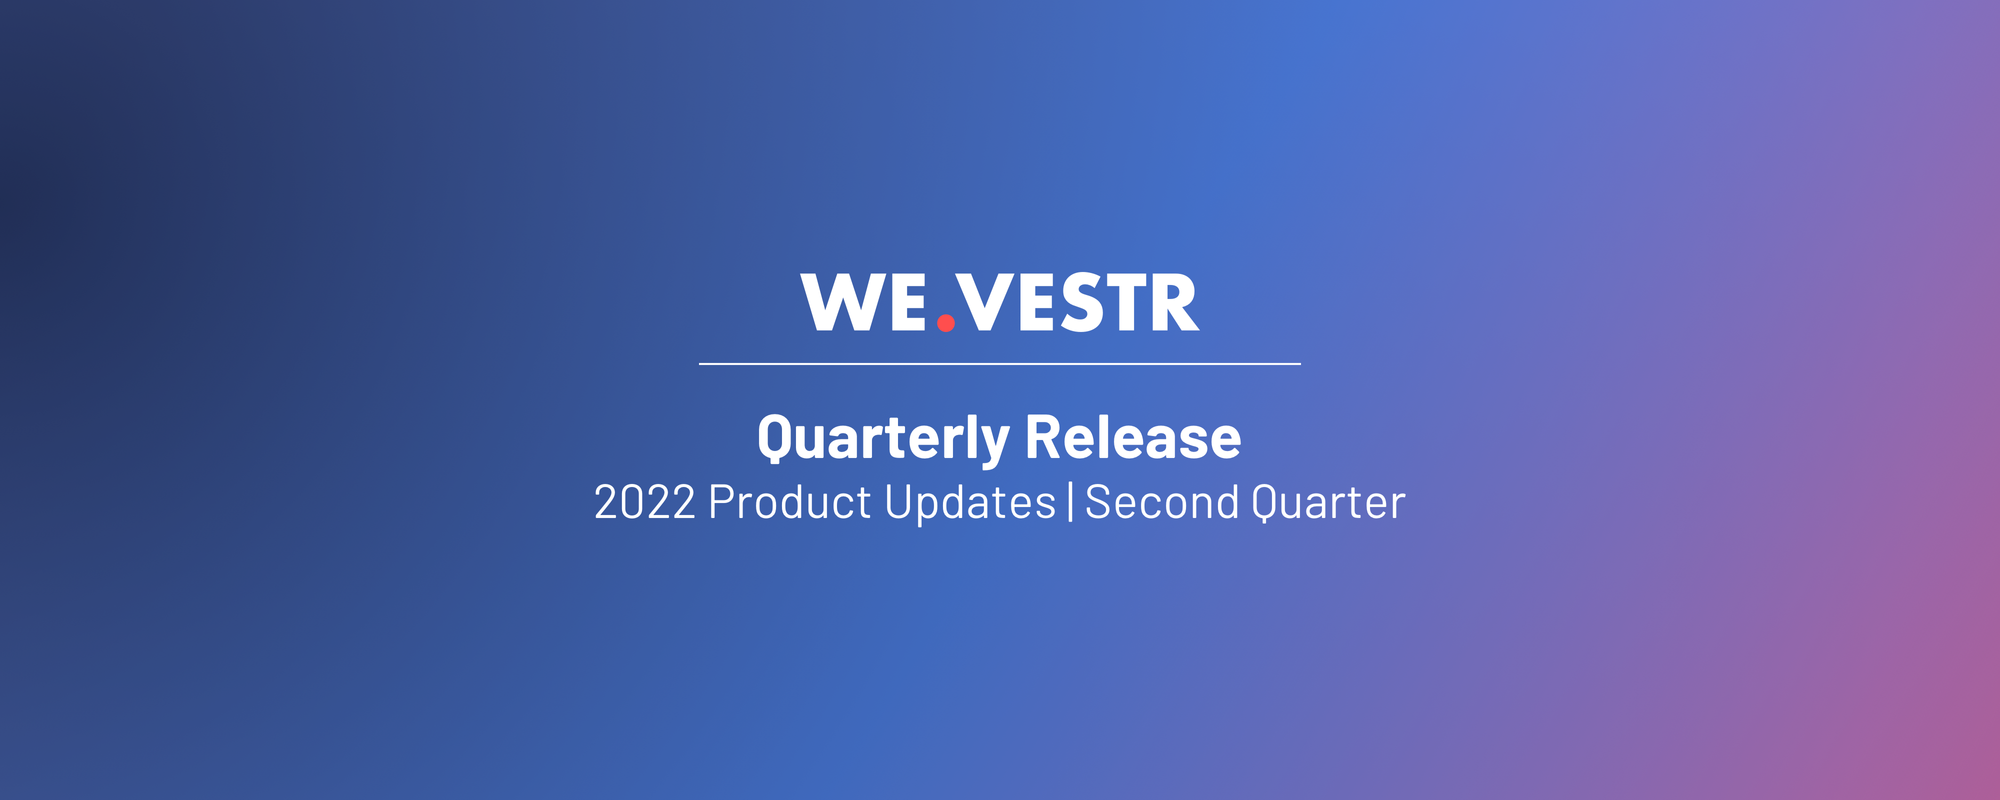 WE.VESTR Quarterly Release